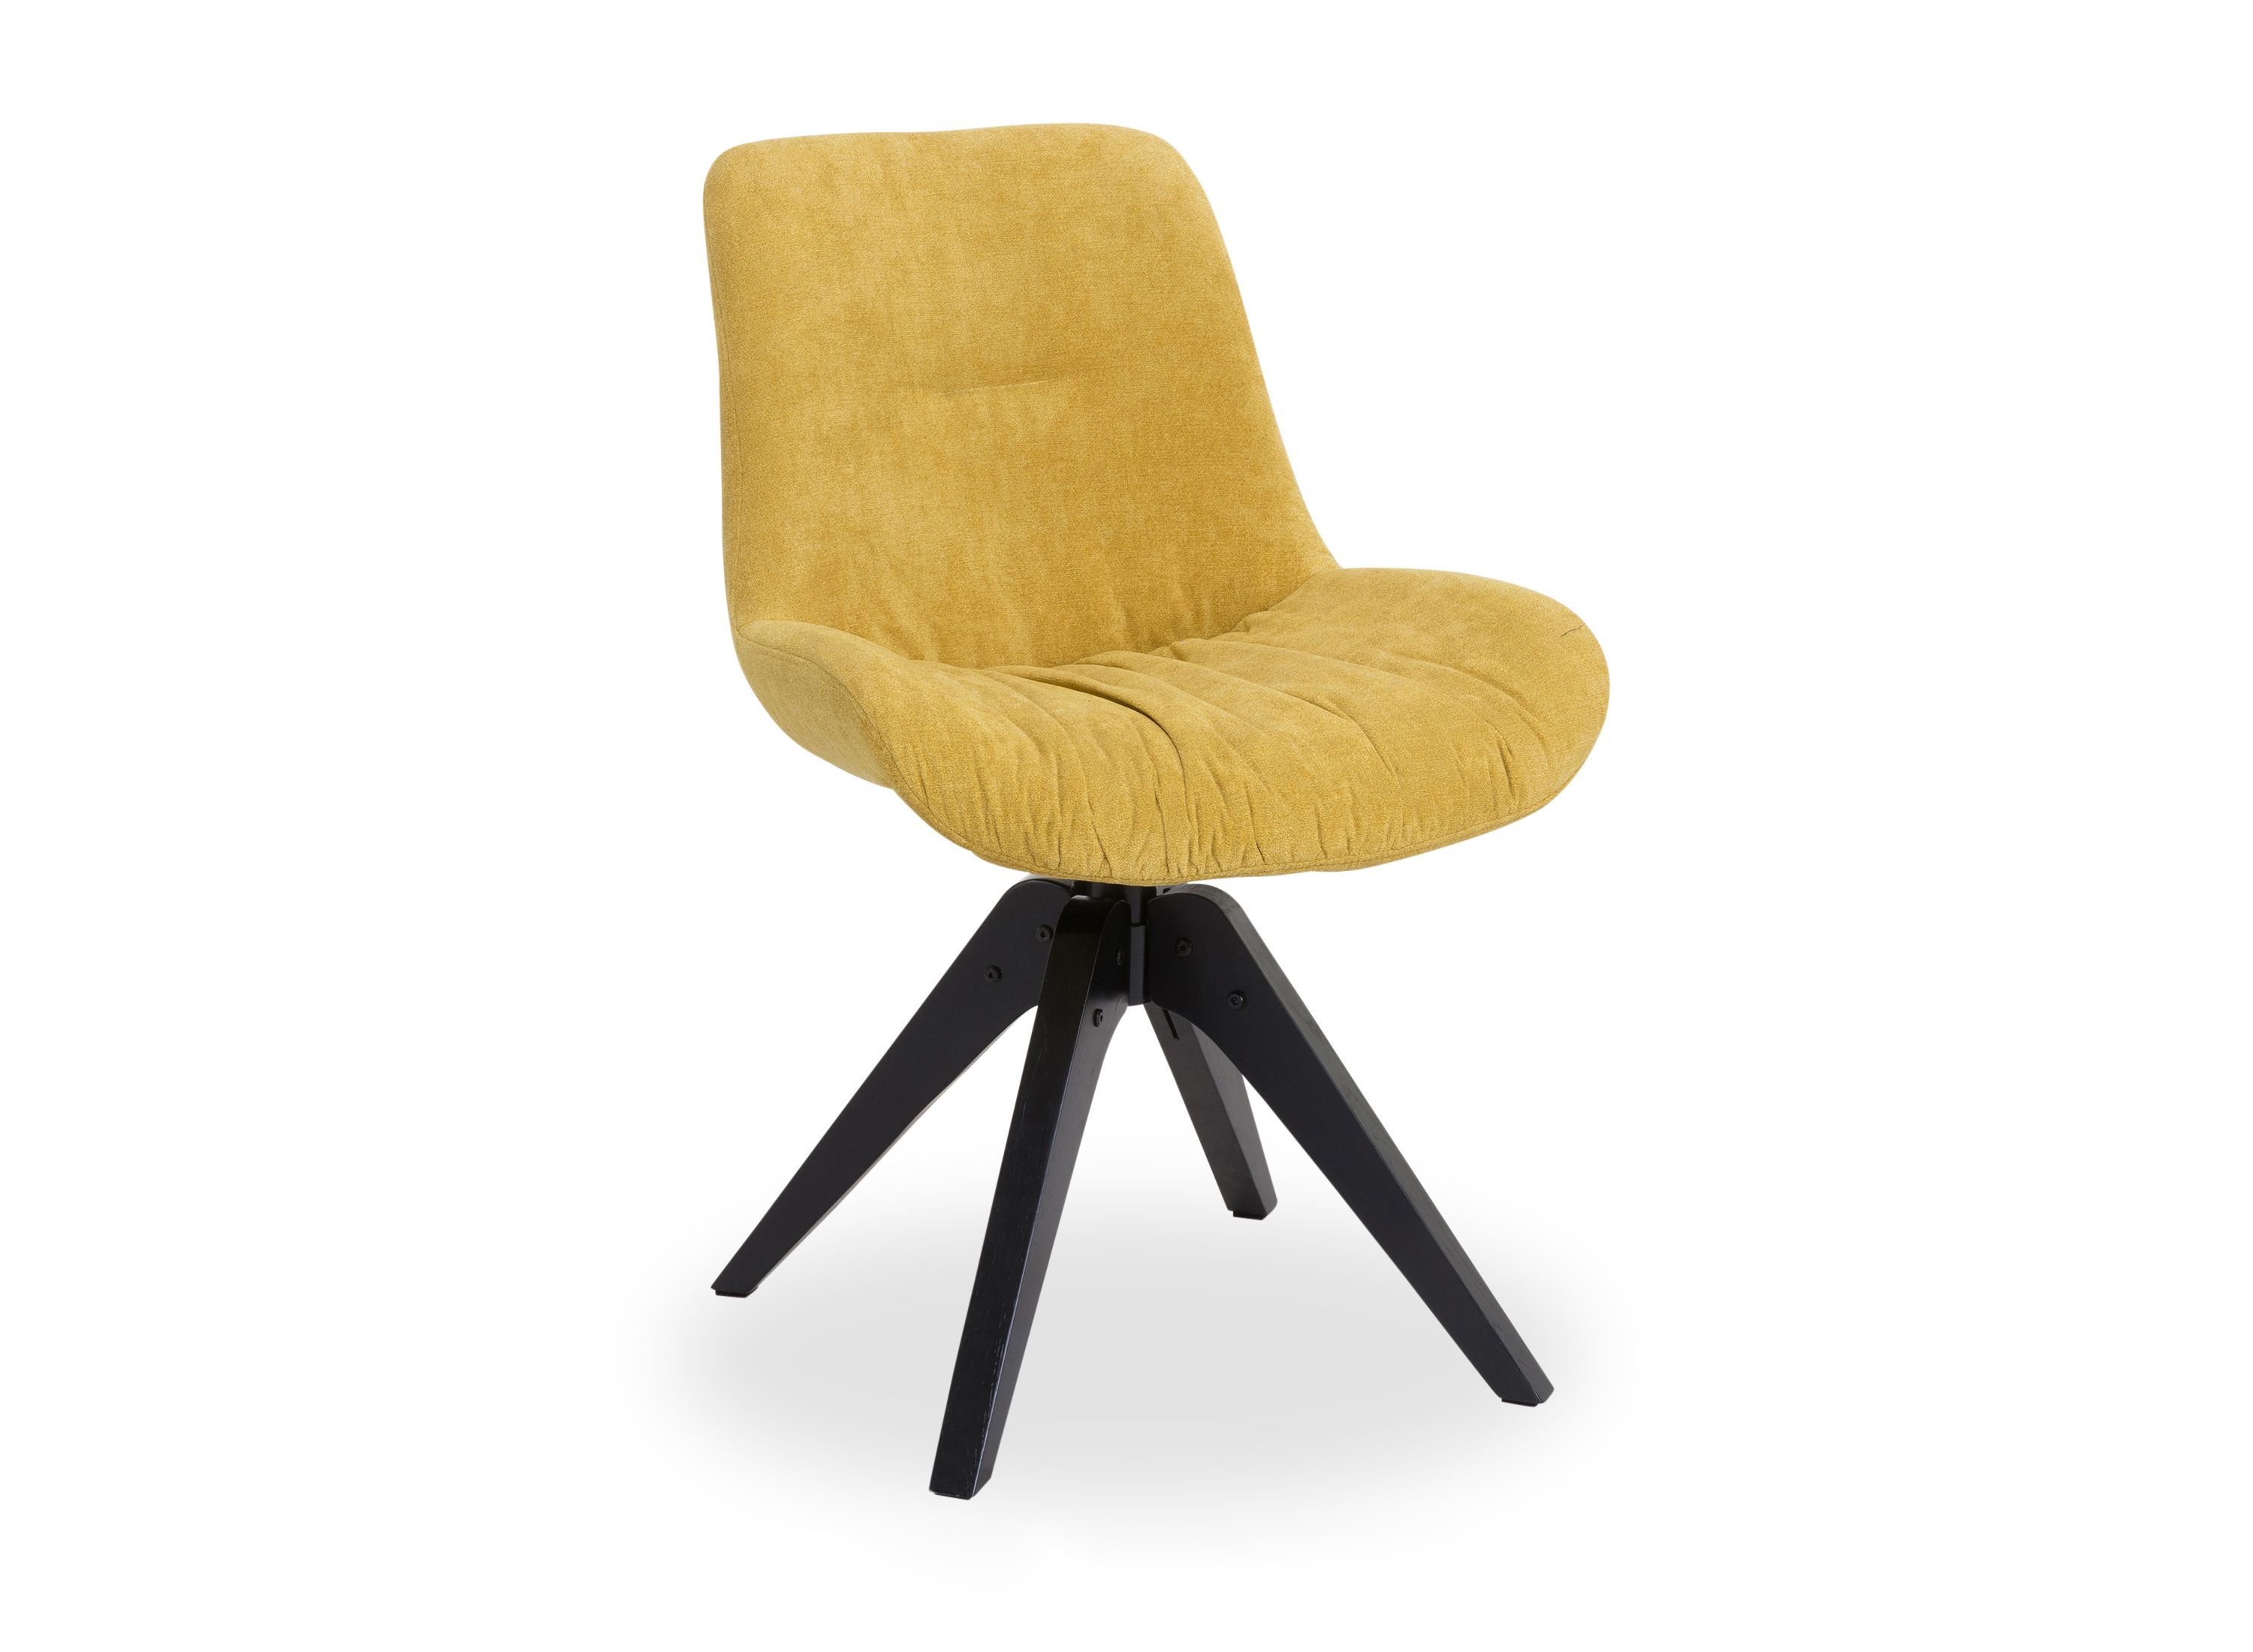 Sessel IGGY | Esszimmerstühle | Möbel | & Wohnen dieser im auf Alles | Einrichtungs-Centrum Welt Bänke Stühle und